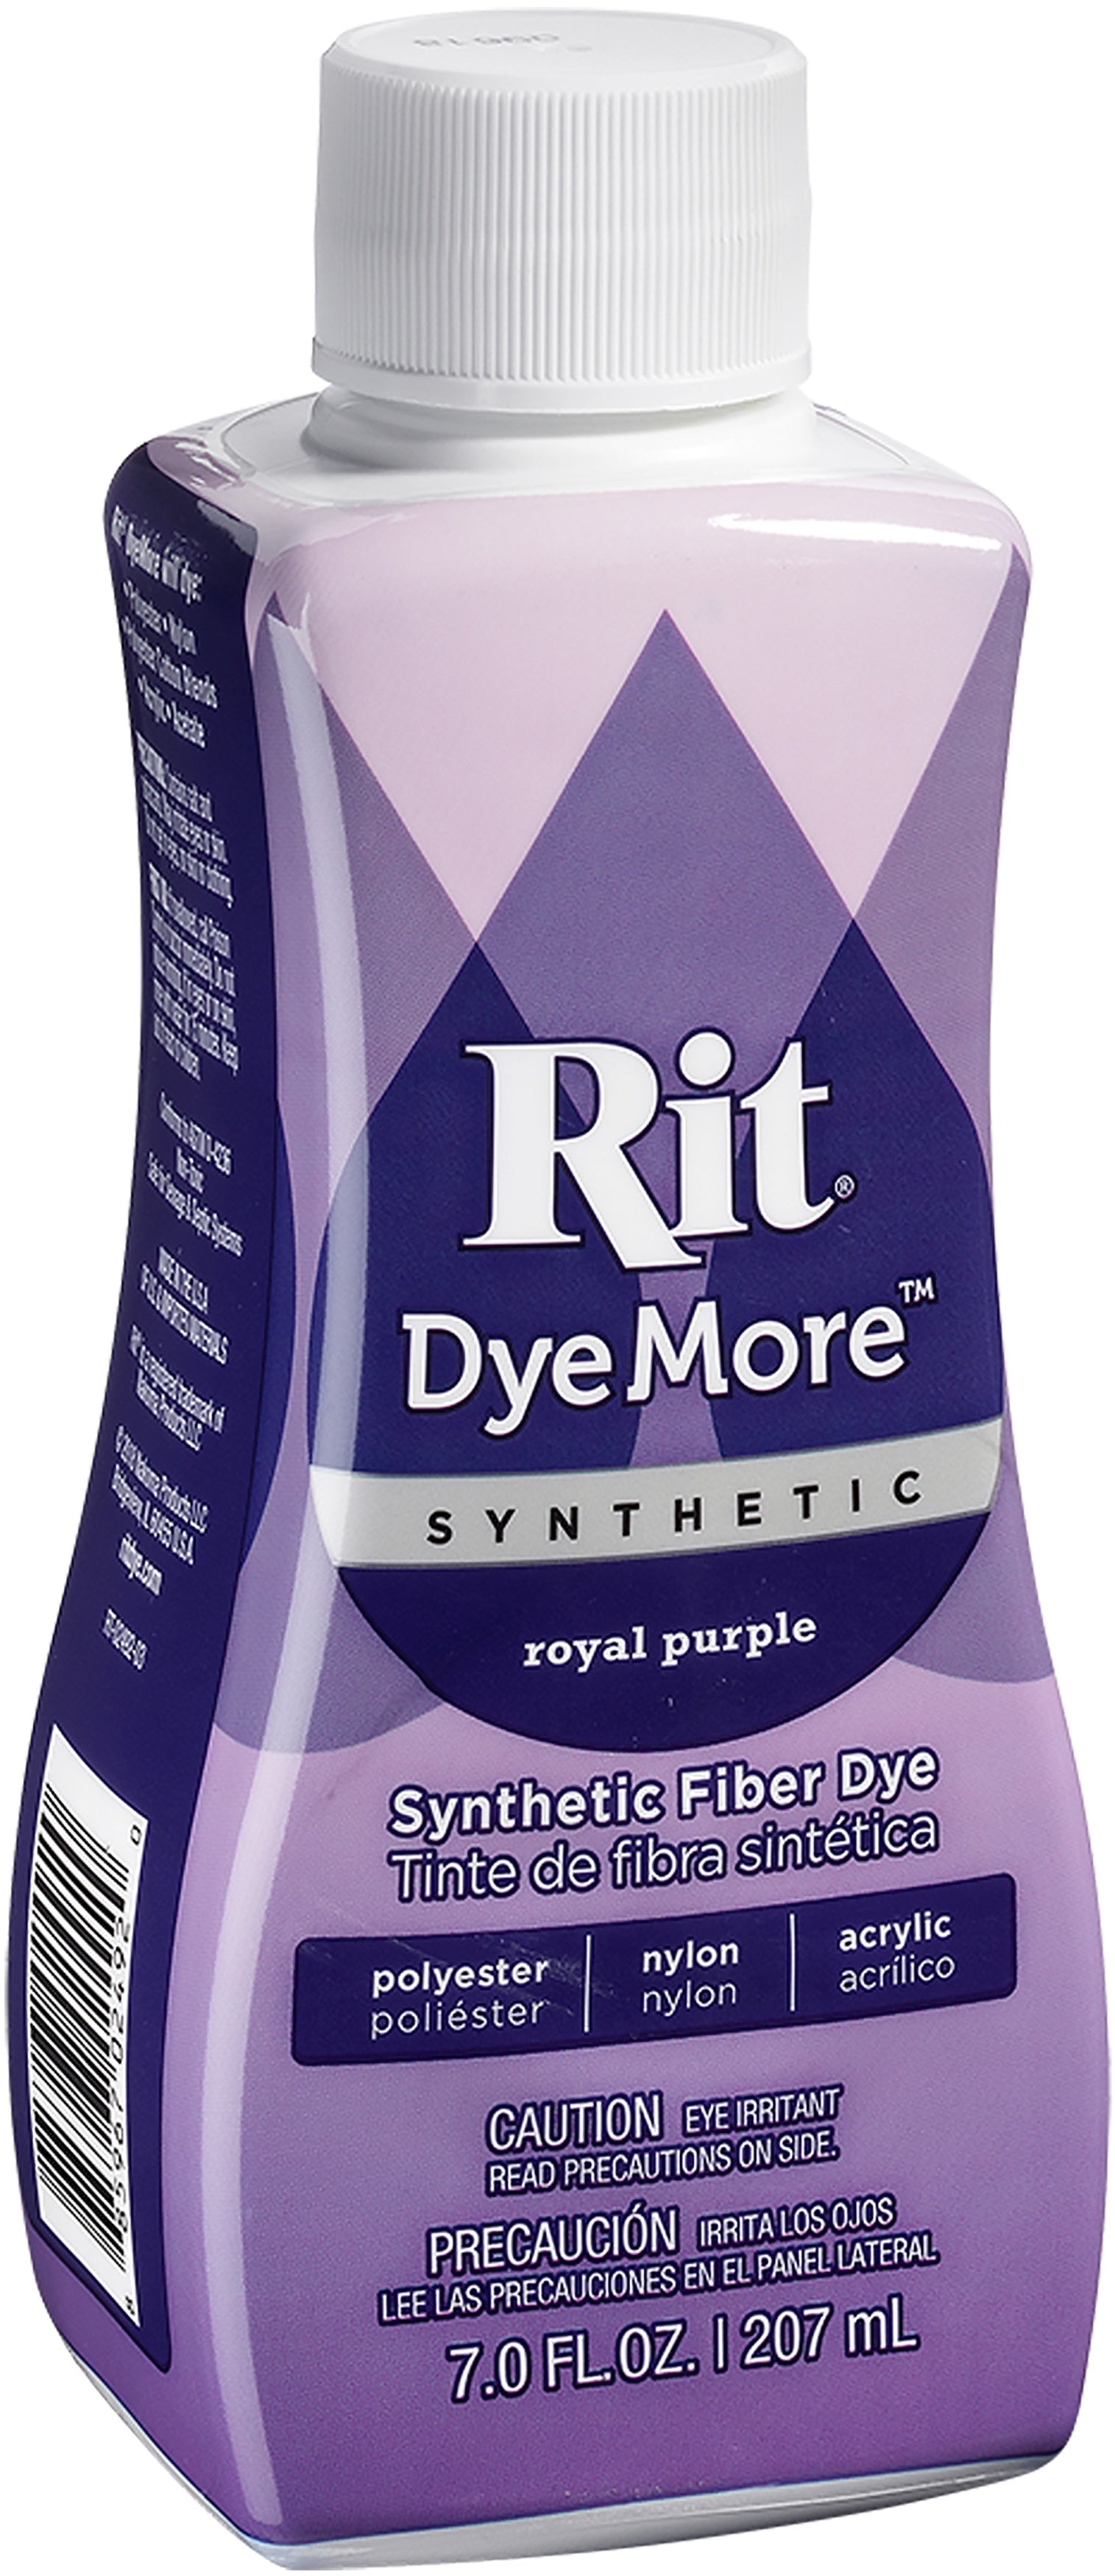 Rit DyeMore Synthetic Fiber Dye, Sand Stone - 7.0 fl oz